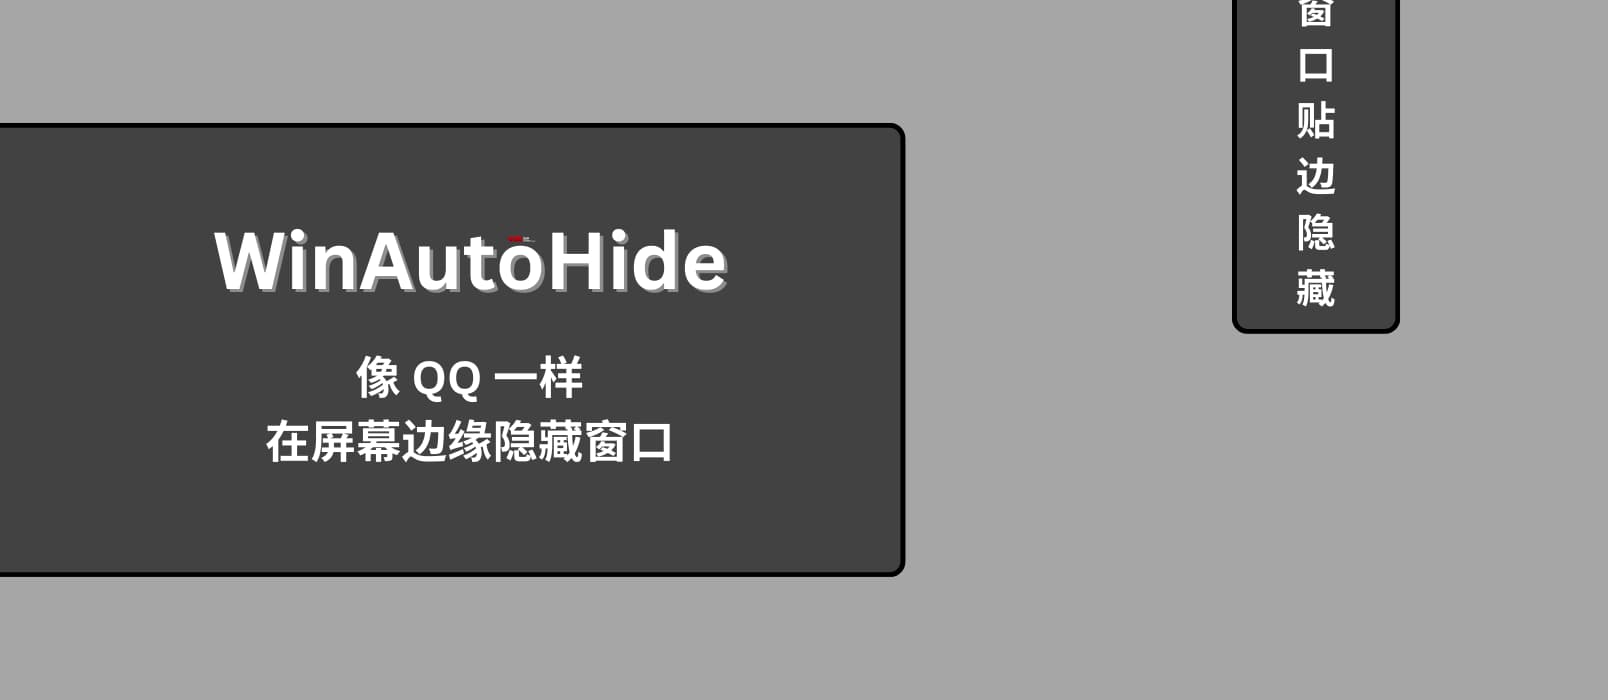 WinAutoHide - Win 11 可用，像 QQ 一样在屏幕边缘隐藏窗口 20